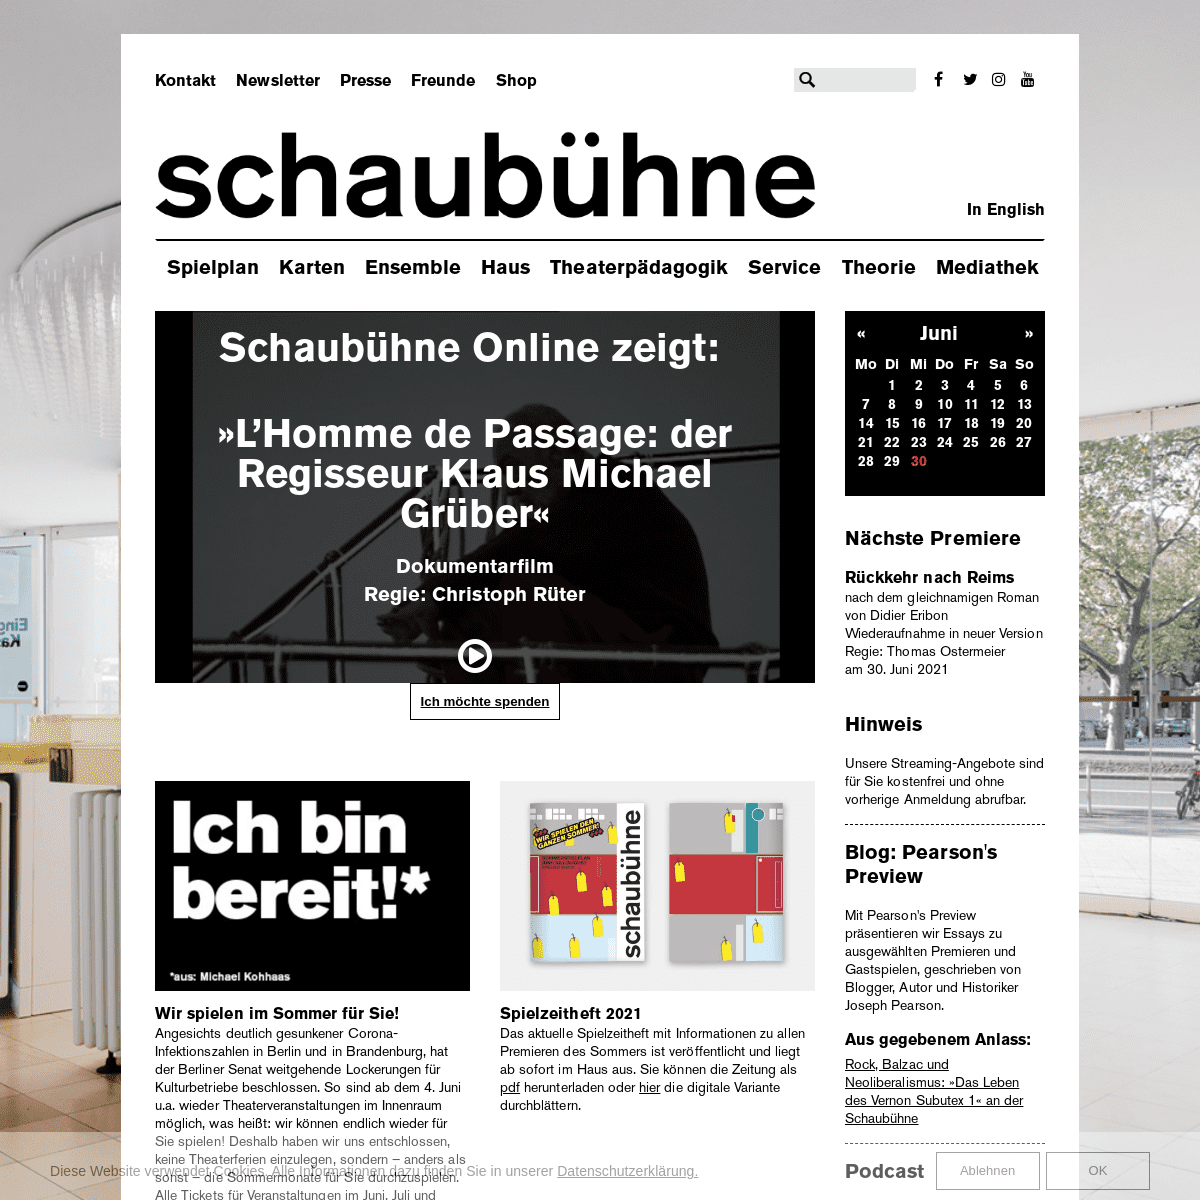 A complete backup of https://schaubuehne.de